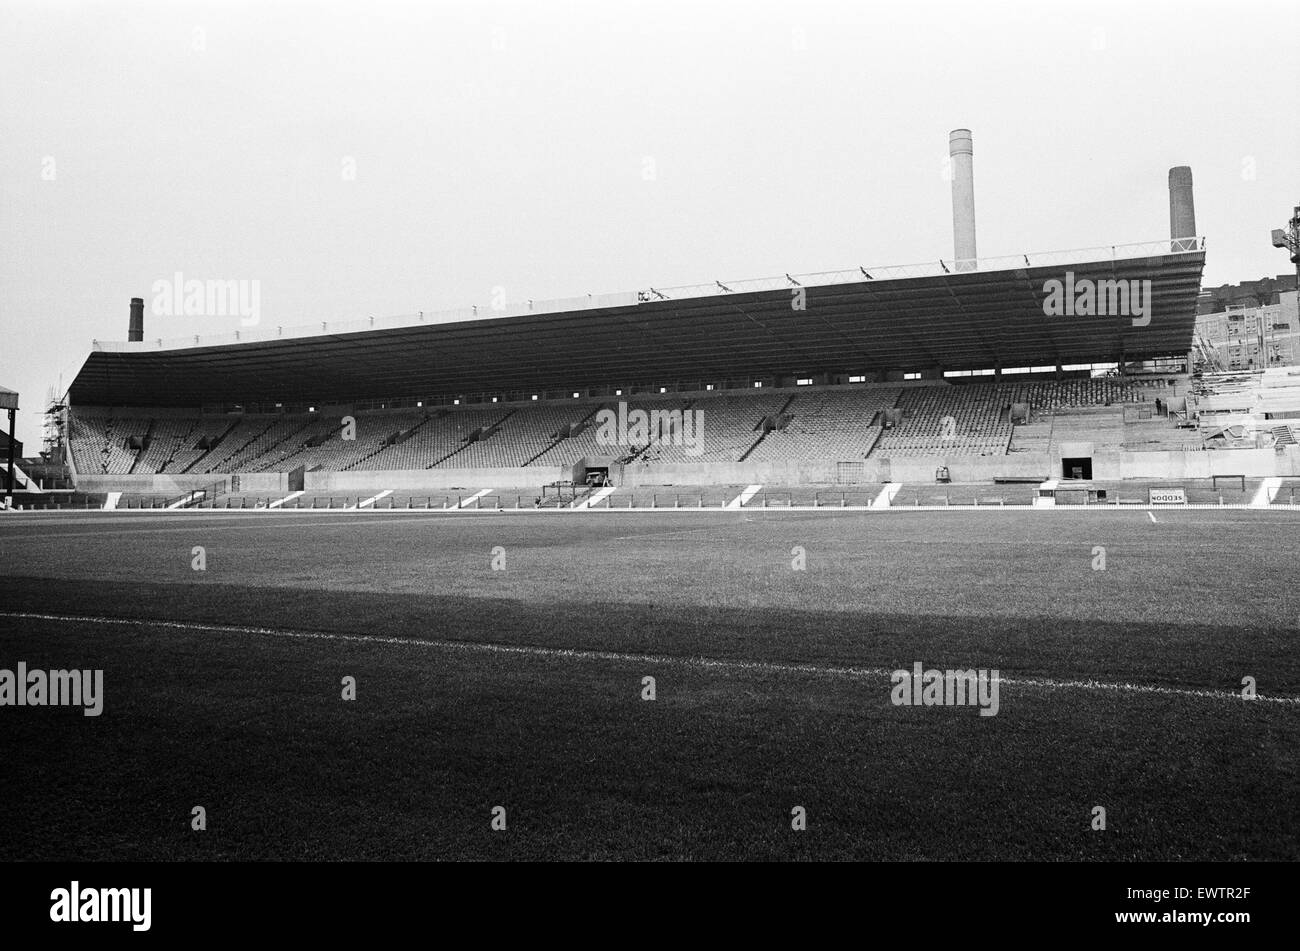 Le stade Old Trafford, domicile du Manchester United F.C., le nouveau stand de cantilever. Août 1965. Banque D'Images